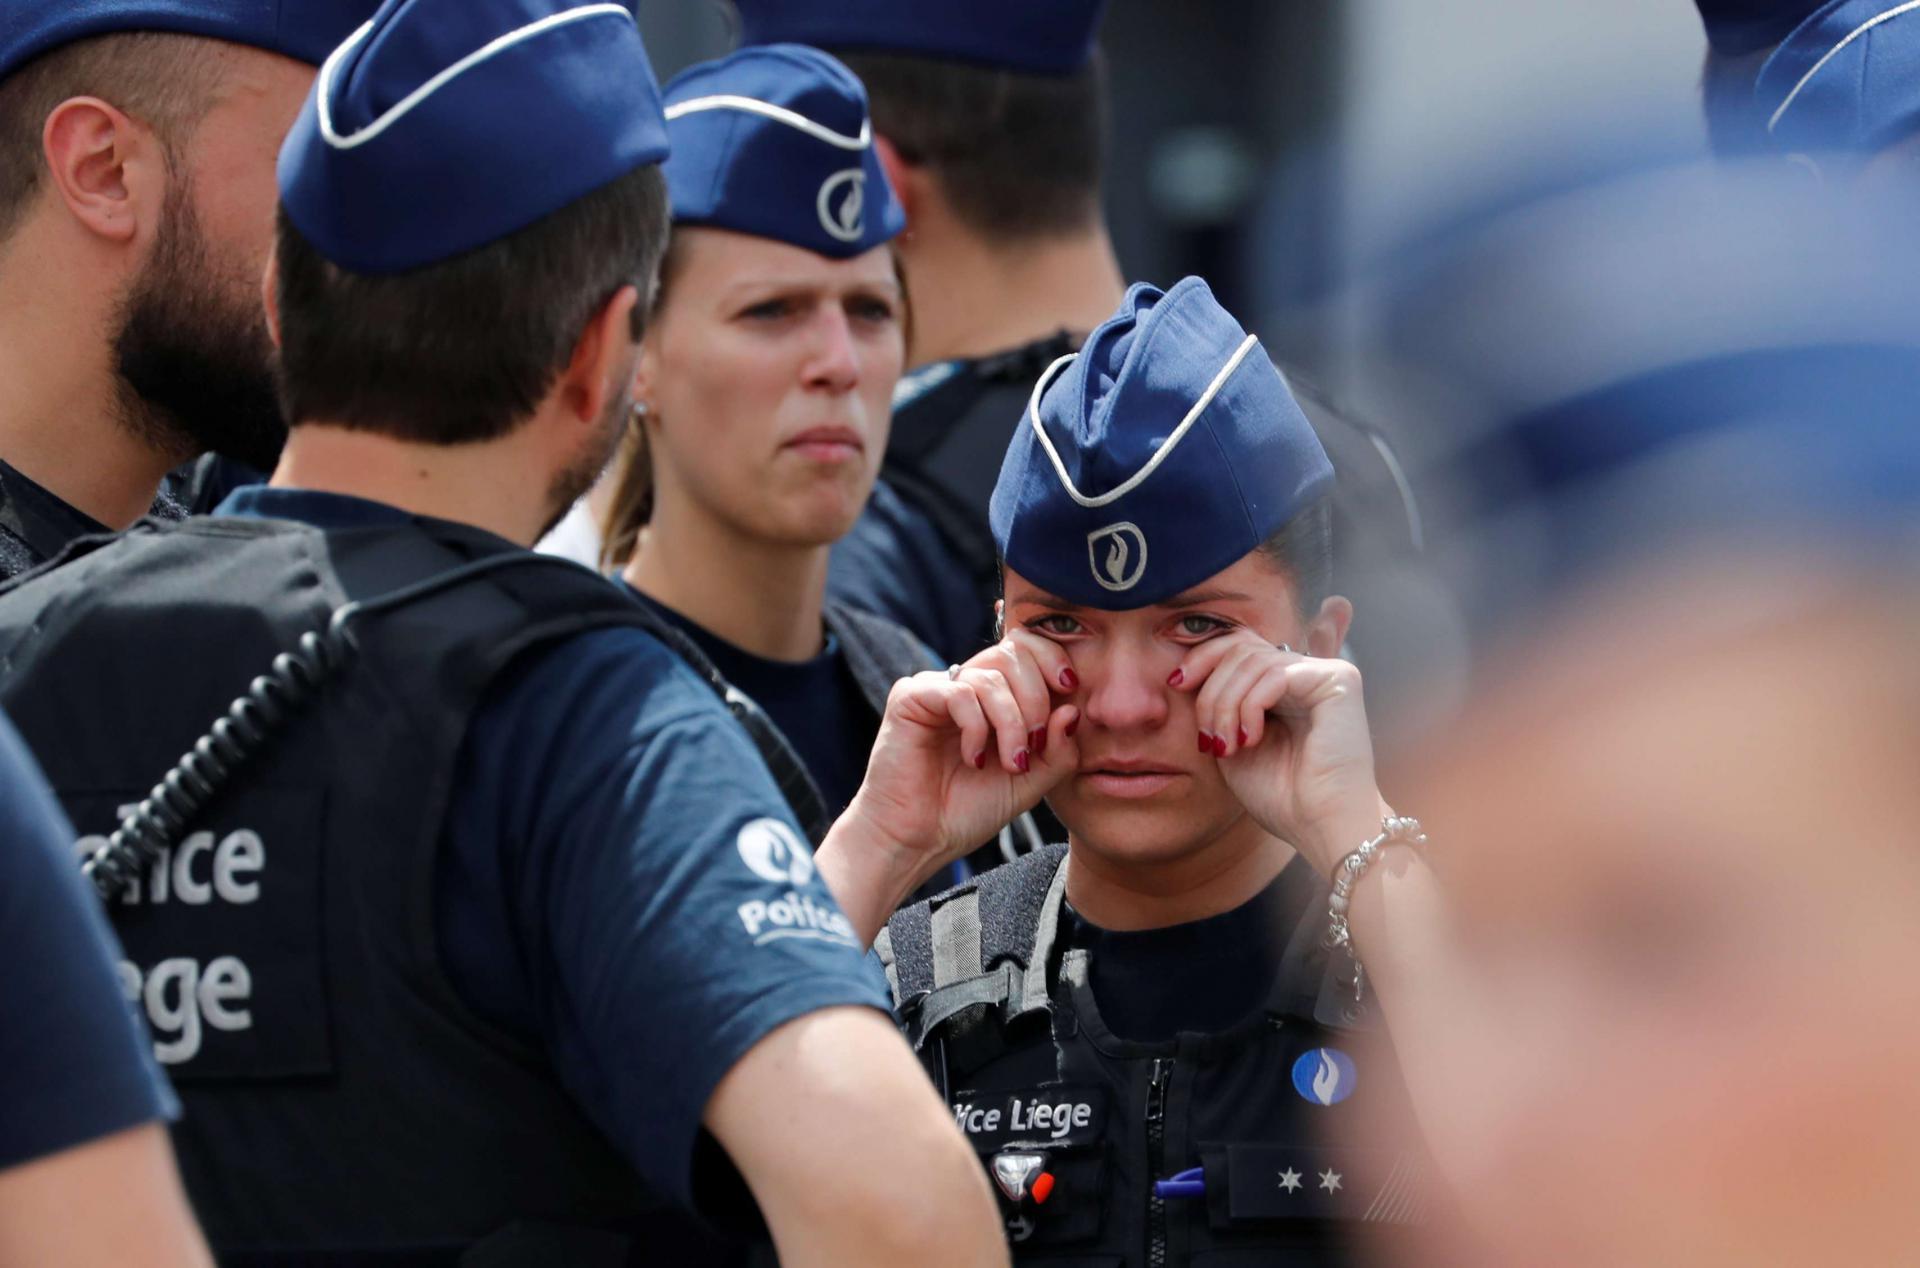 حزن وندم في صفوف الشرطة البلجيكية بعد مقتل شرطيتين